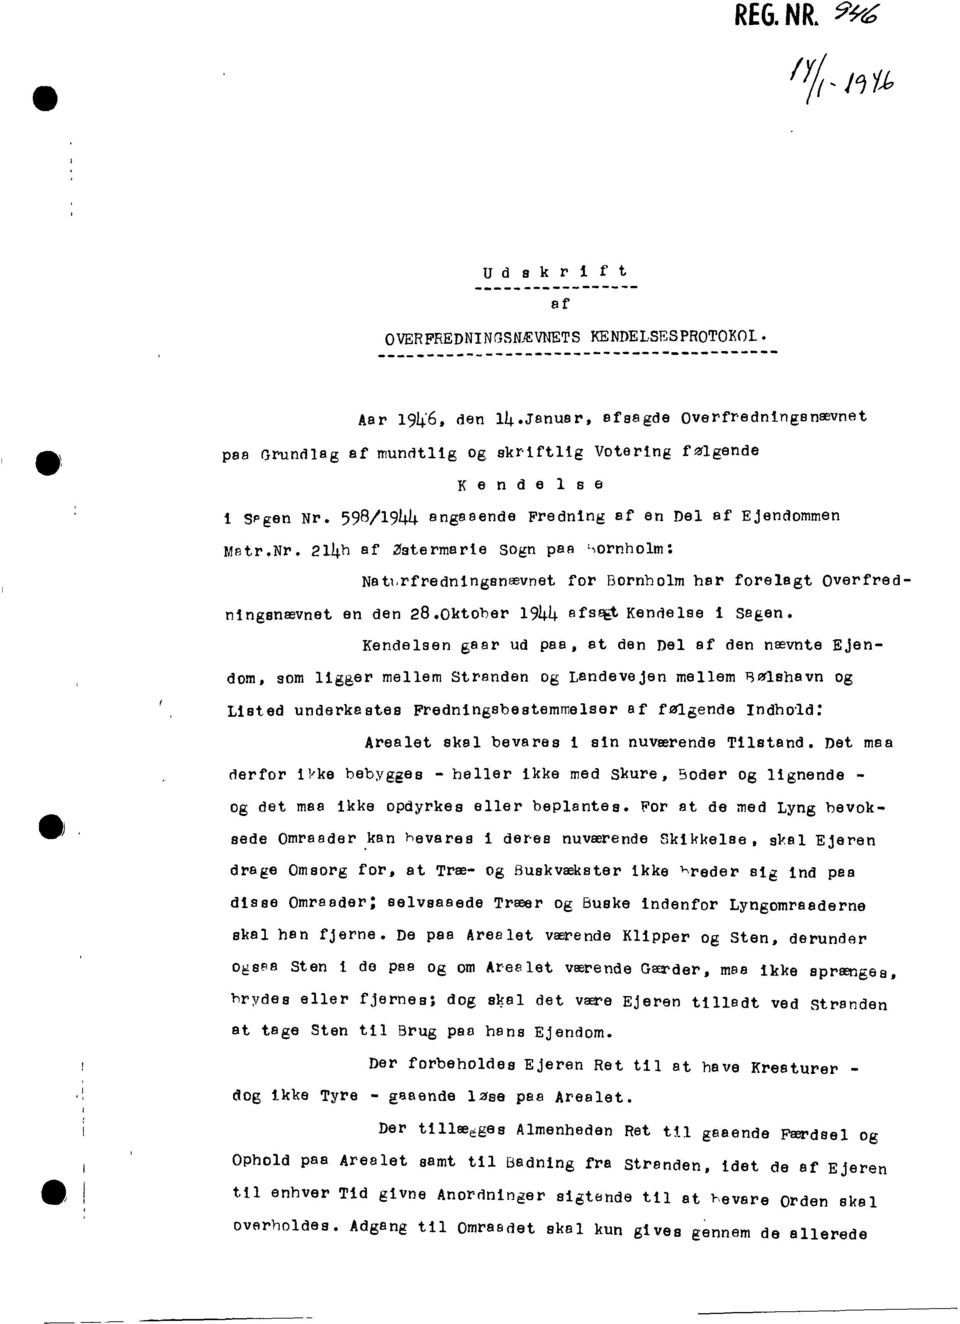 598/1944 angaaende Fredning af en Del af Ejendommen Matr.Nr. 214h af Zstermarie sogn paa ',ornholm: Natl,rfredningsnævnet for Bornholm har forelagt Ovel"fredningsnævnet en den 28.